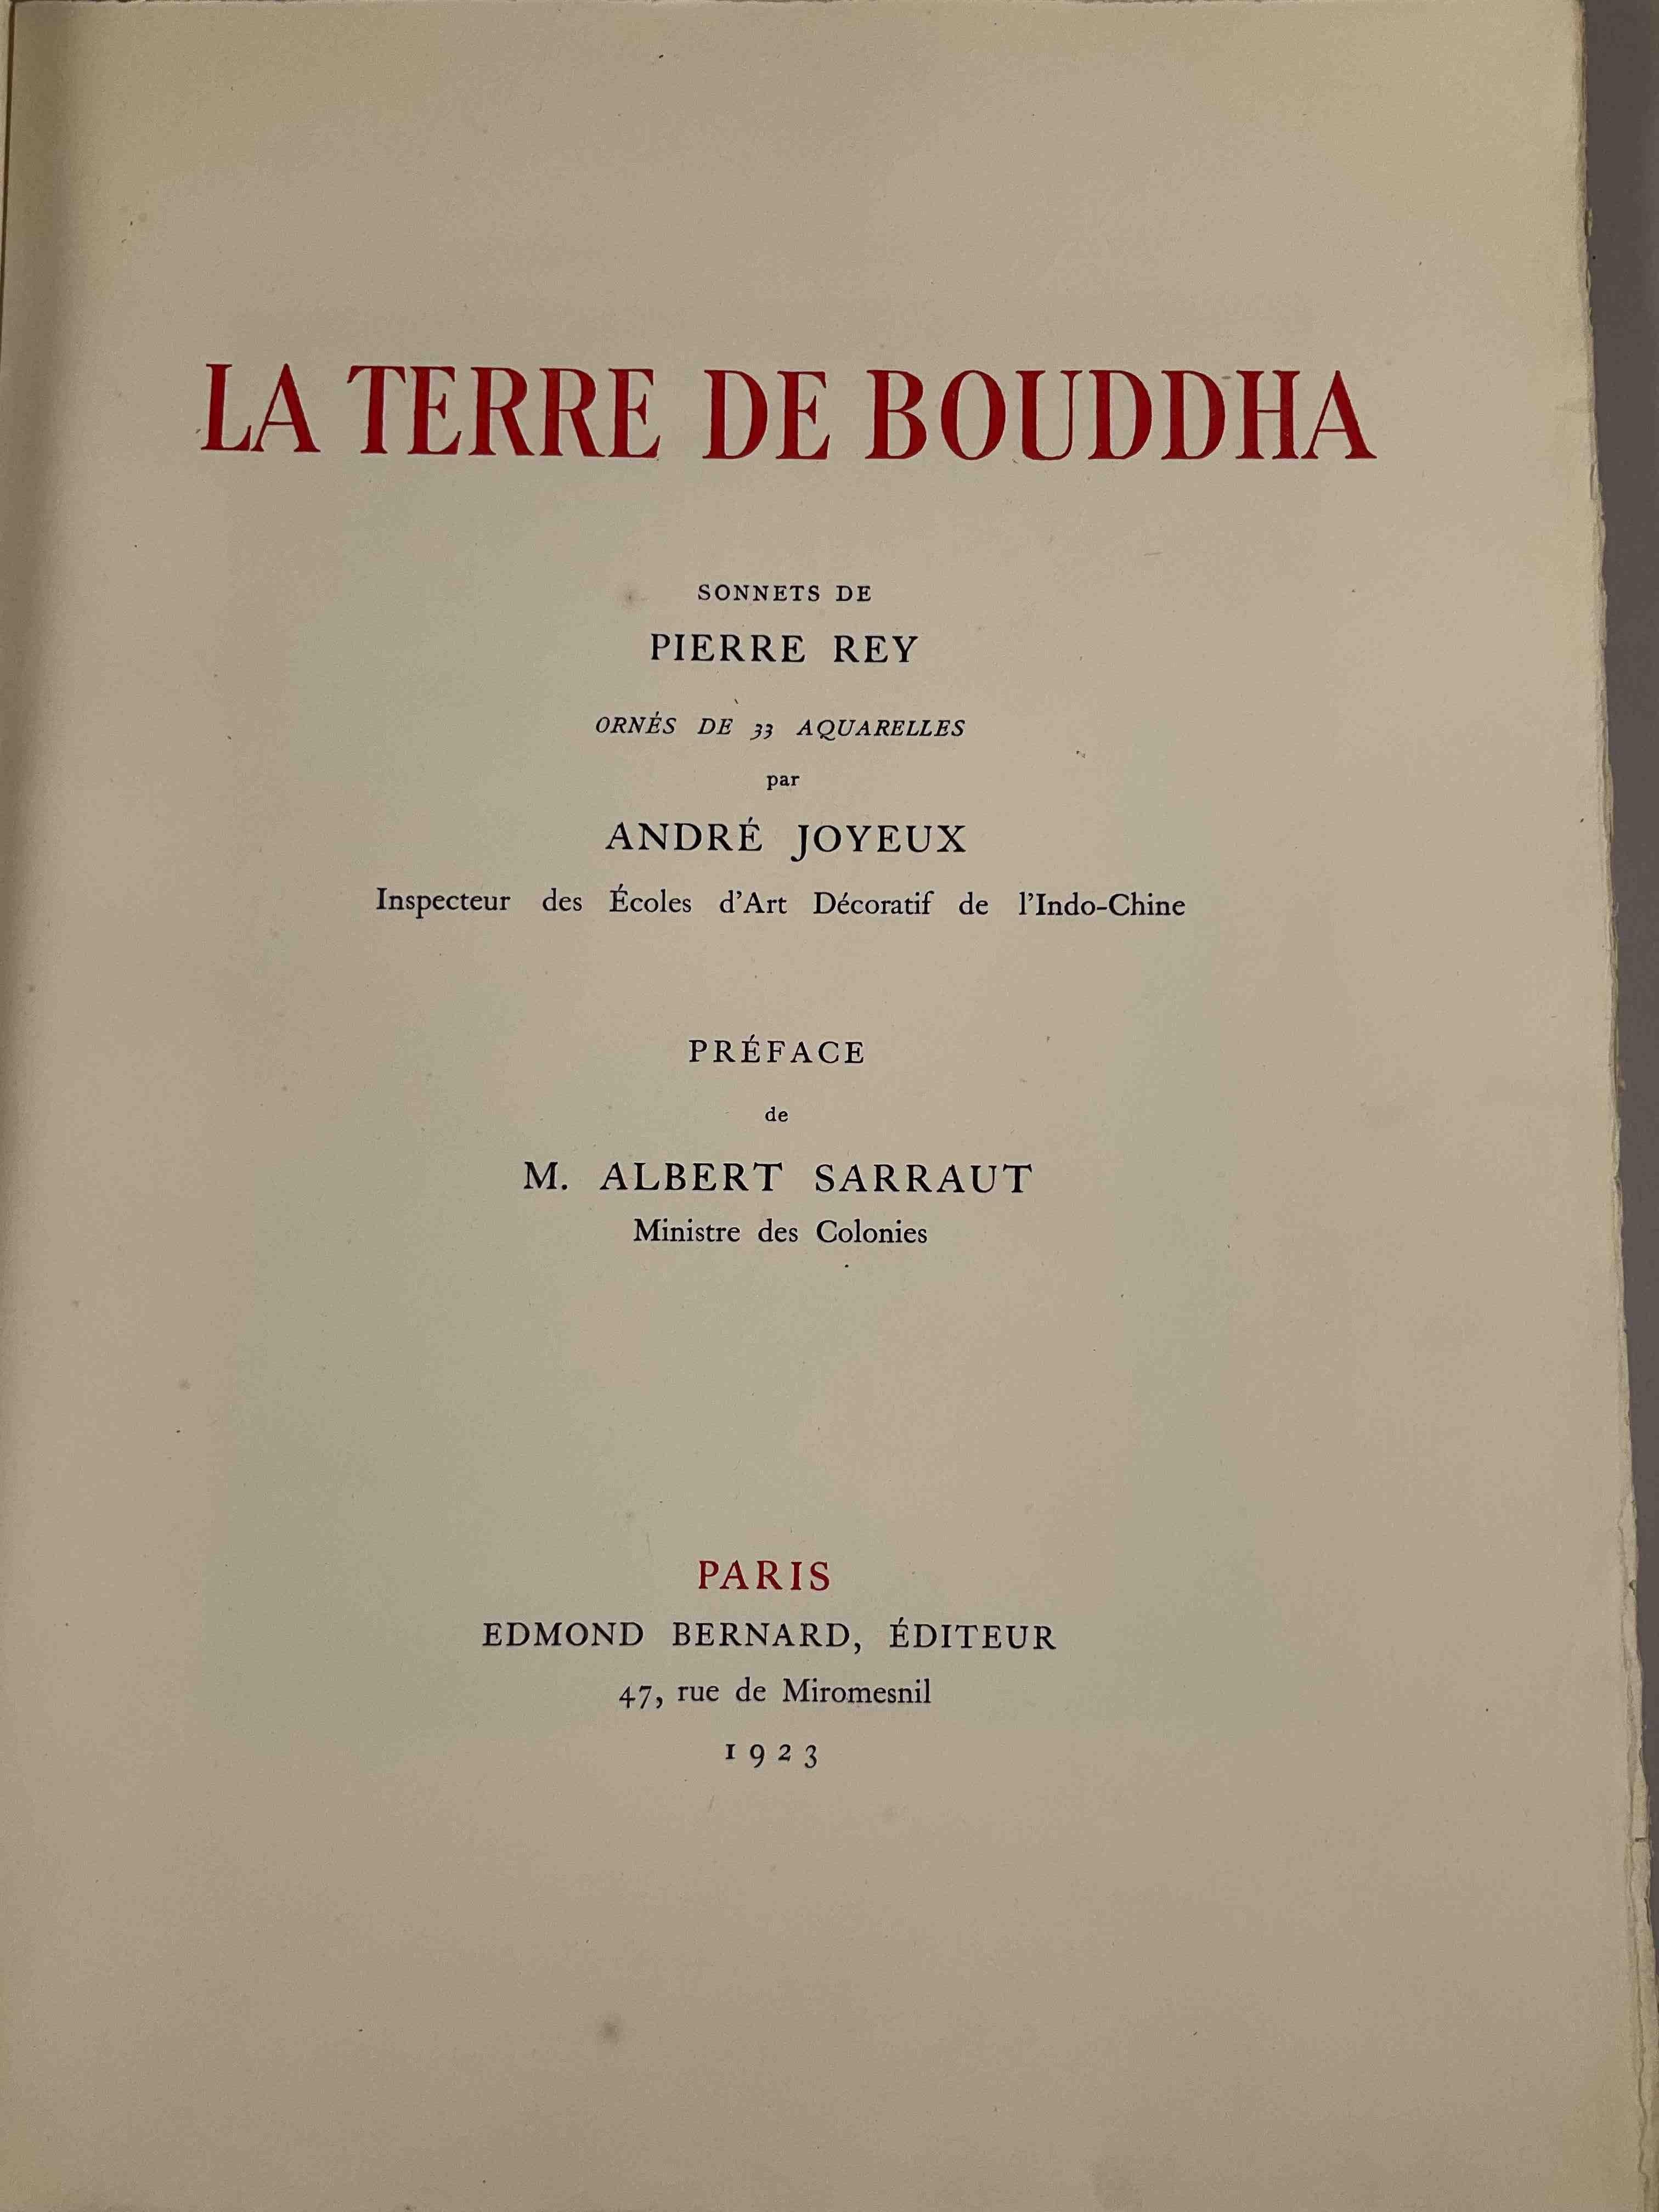 [Indochine] Pierre Rey, La terre de Bouddha.
Paris, Bernard, 1923. [82]p.
Bel...